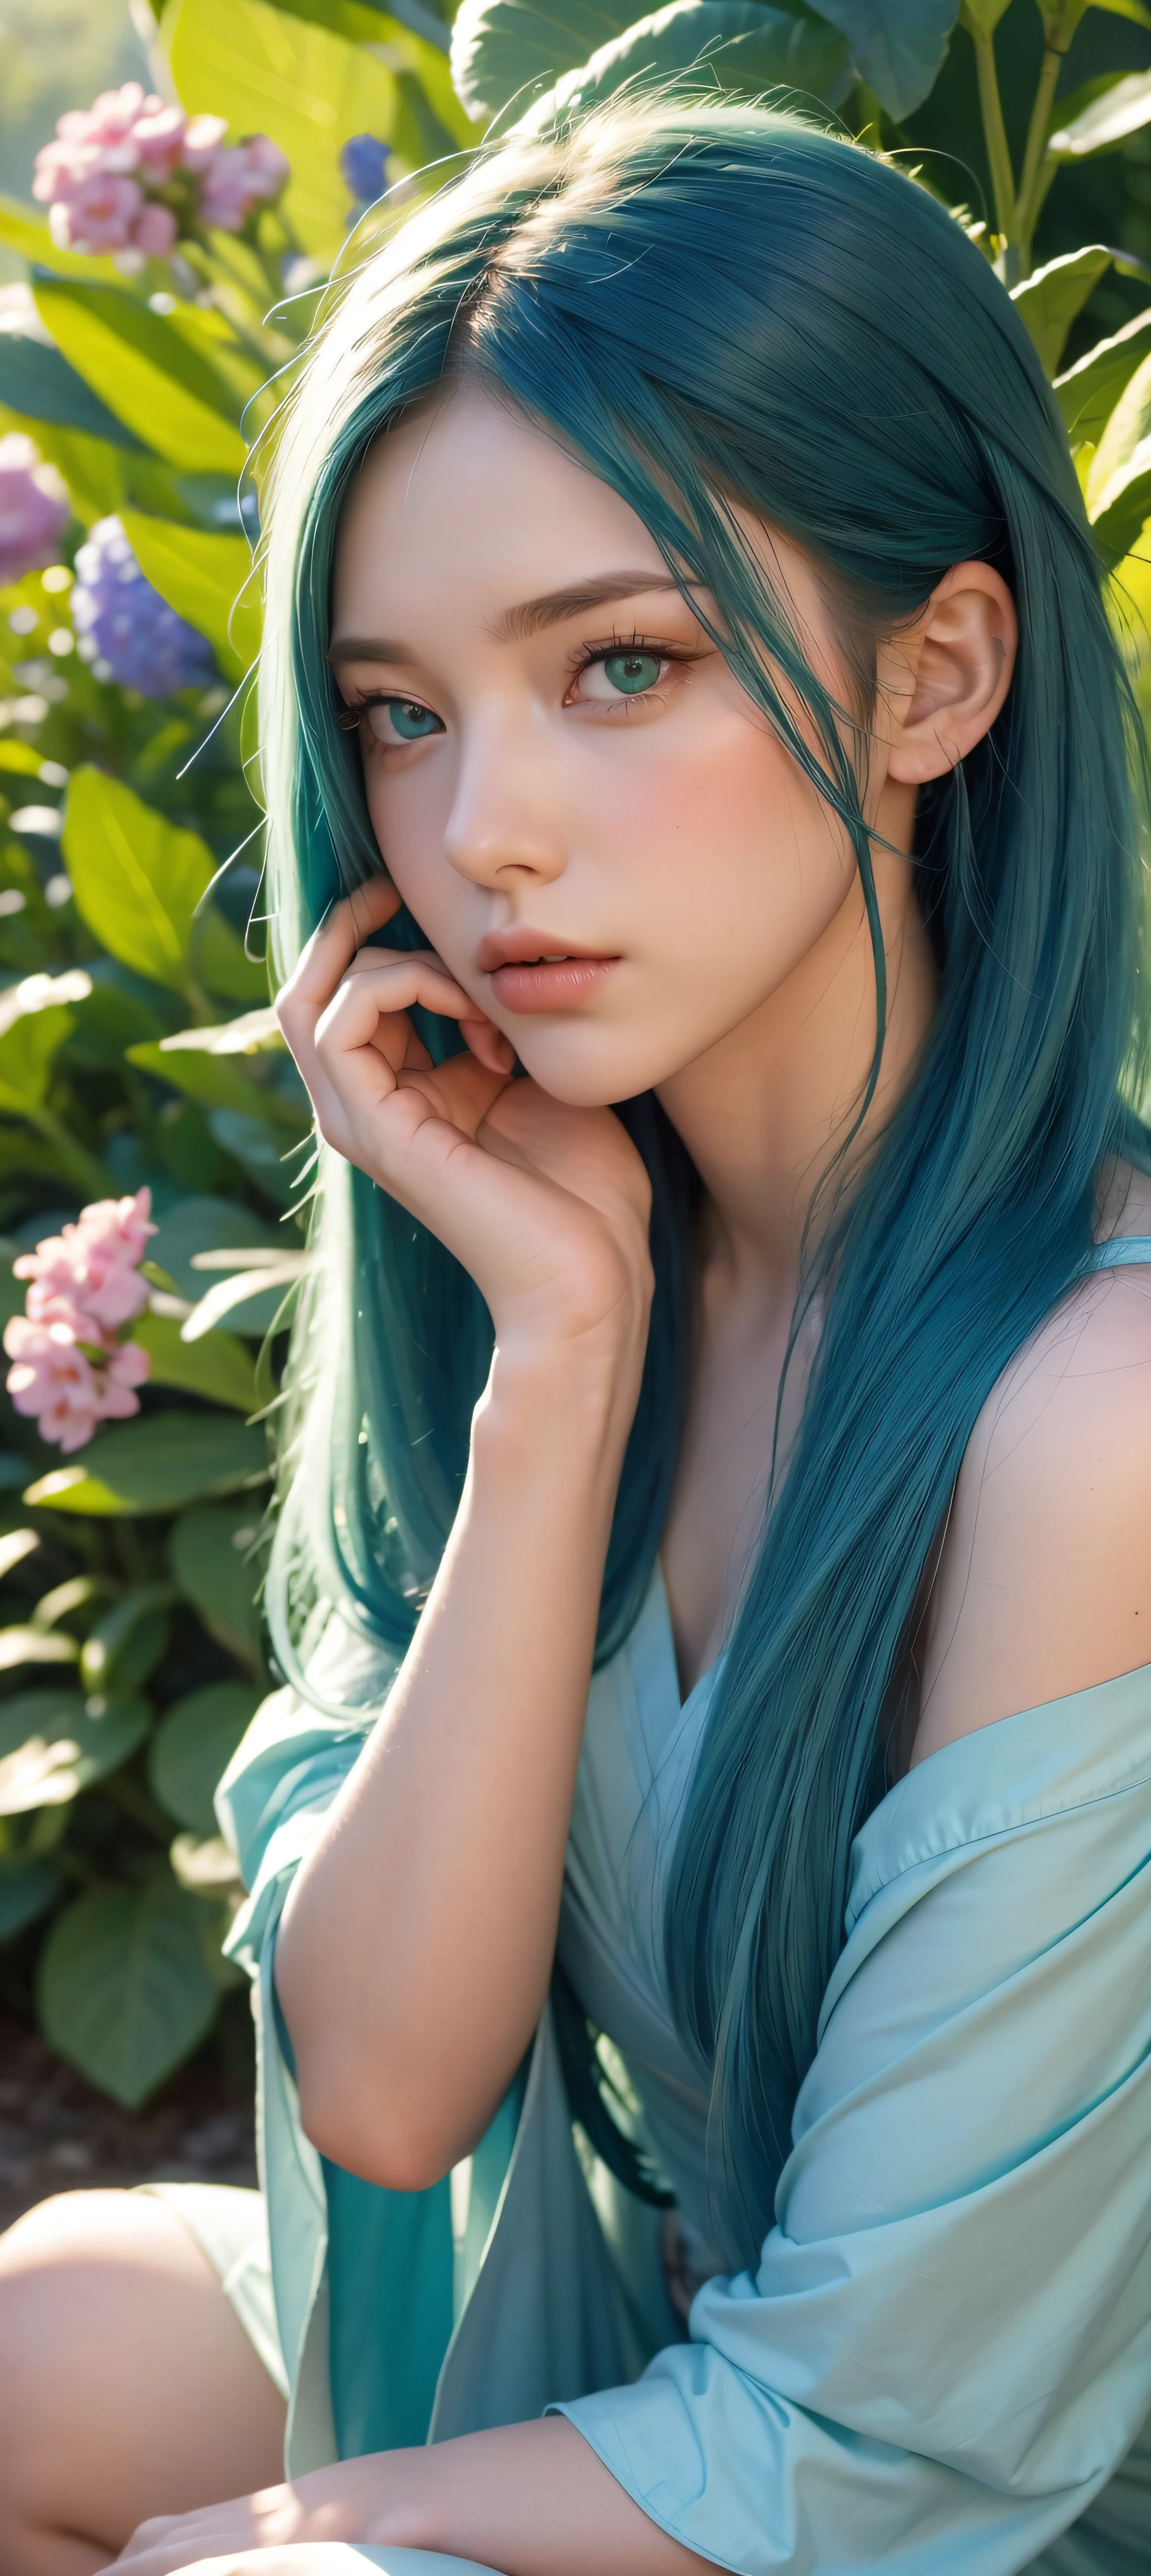 8K, cru, (Obra de arte, melhor qualidade),1 garota com longos cabelos azuis-esverdeados sentada em um campo de plantas e flores verdes, olhos verdes detalhados, a mão sob o queixo, iluminação quente, lindo vestido vermelho, lindo primeiro plano